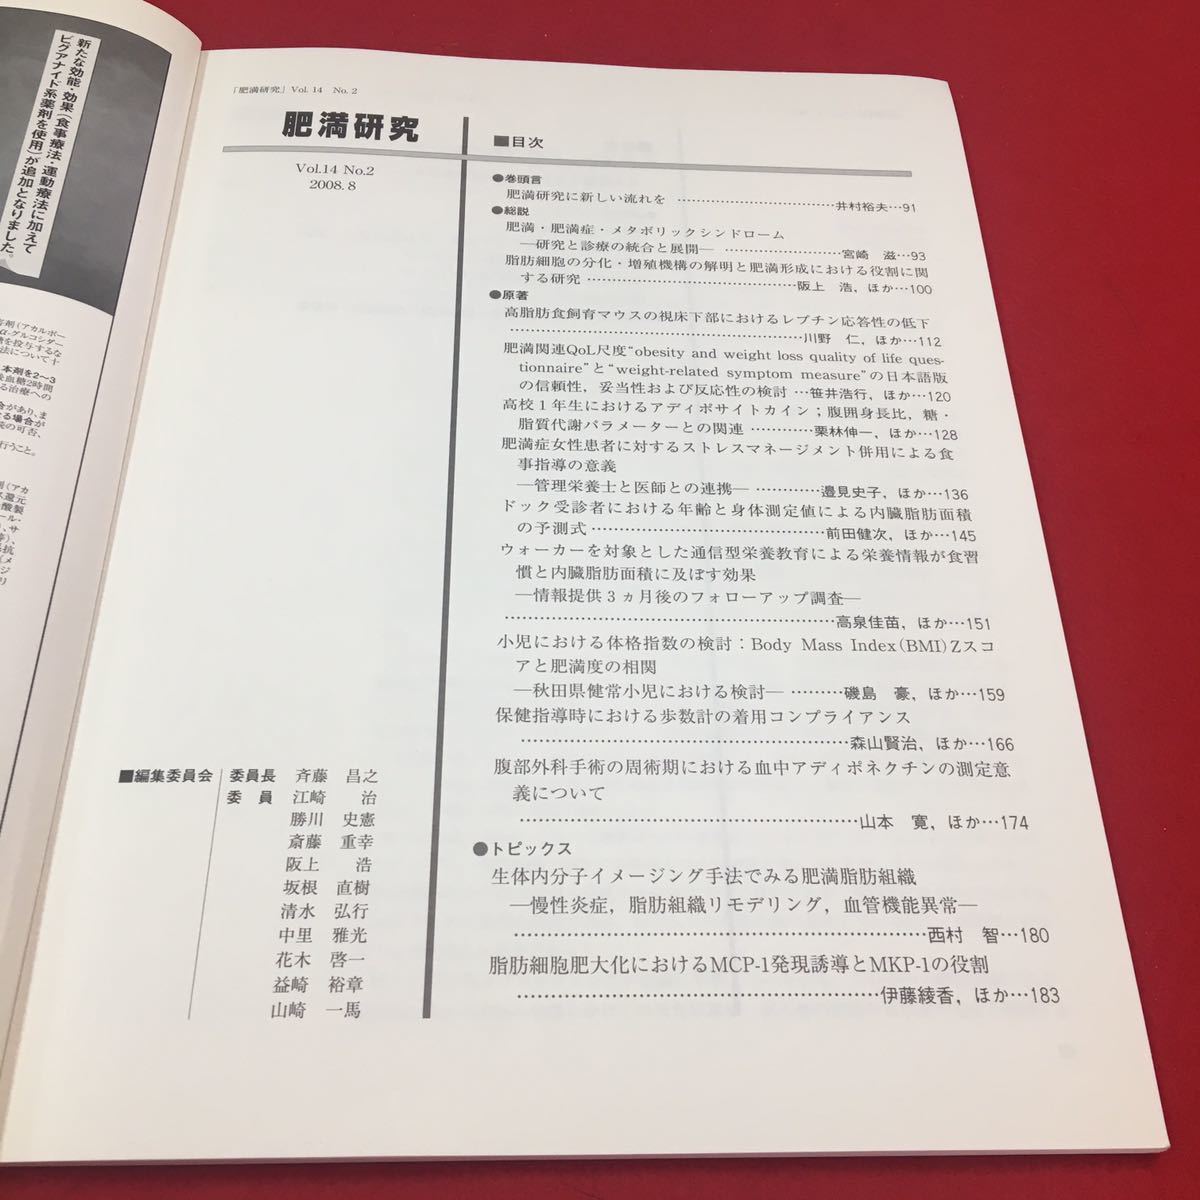 M6b-040 日本肥満学会誌第14巻第2号（通巻40号）2008年発行 肥満研究 医学 医療 肥満 生活習慣病 高血圧 糖尿病 研究 日本肥満学会_画像3